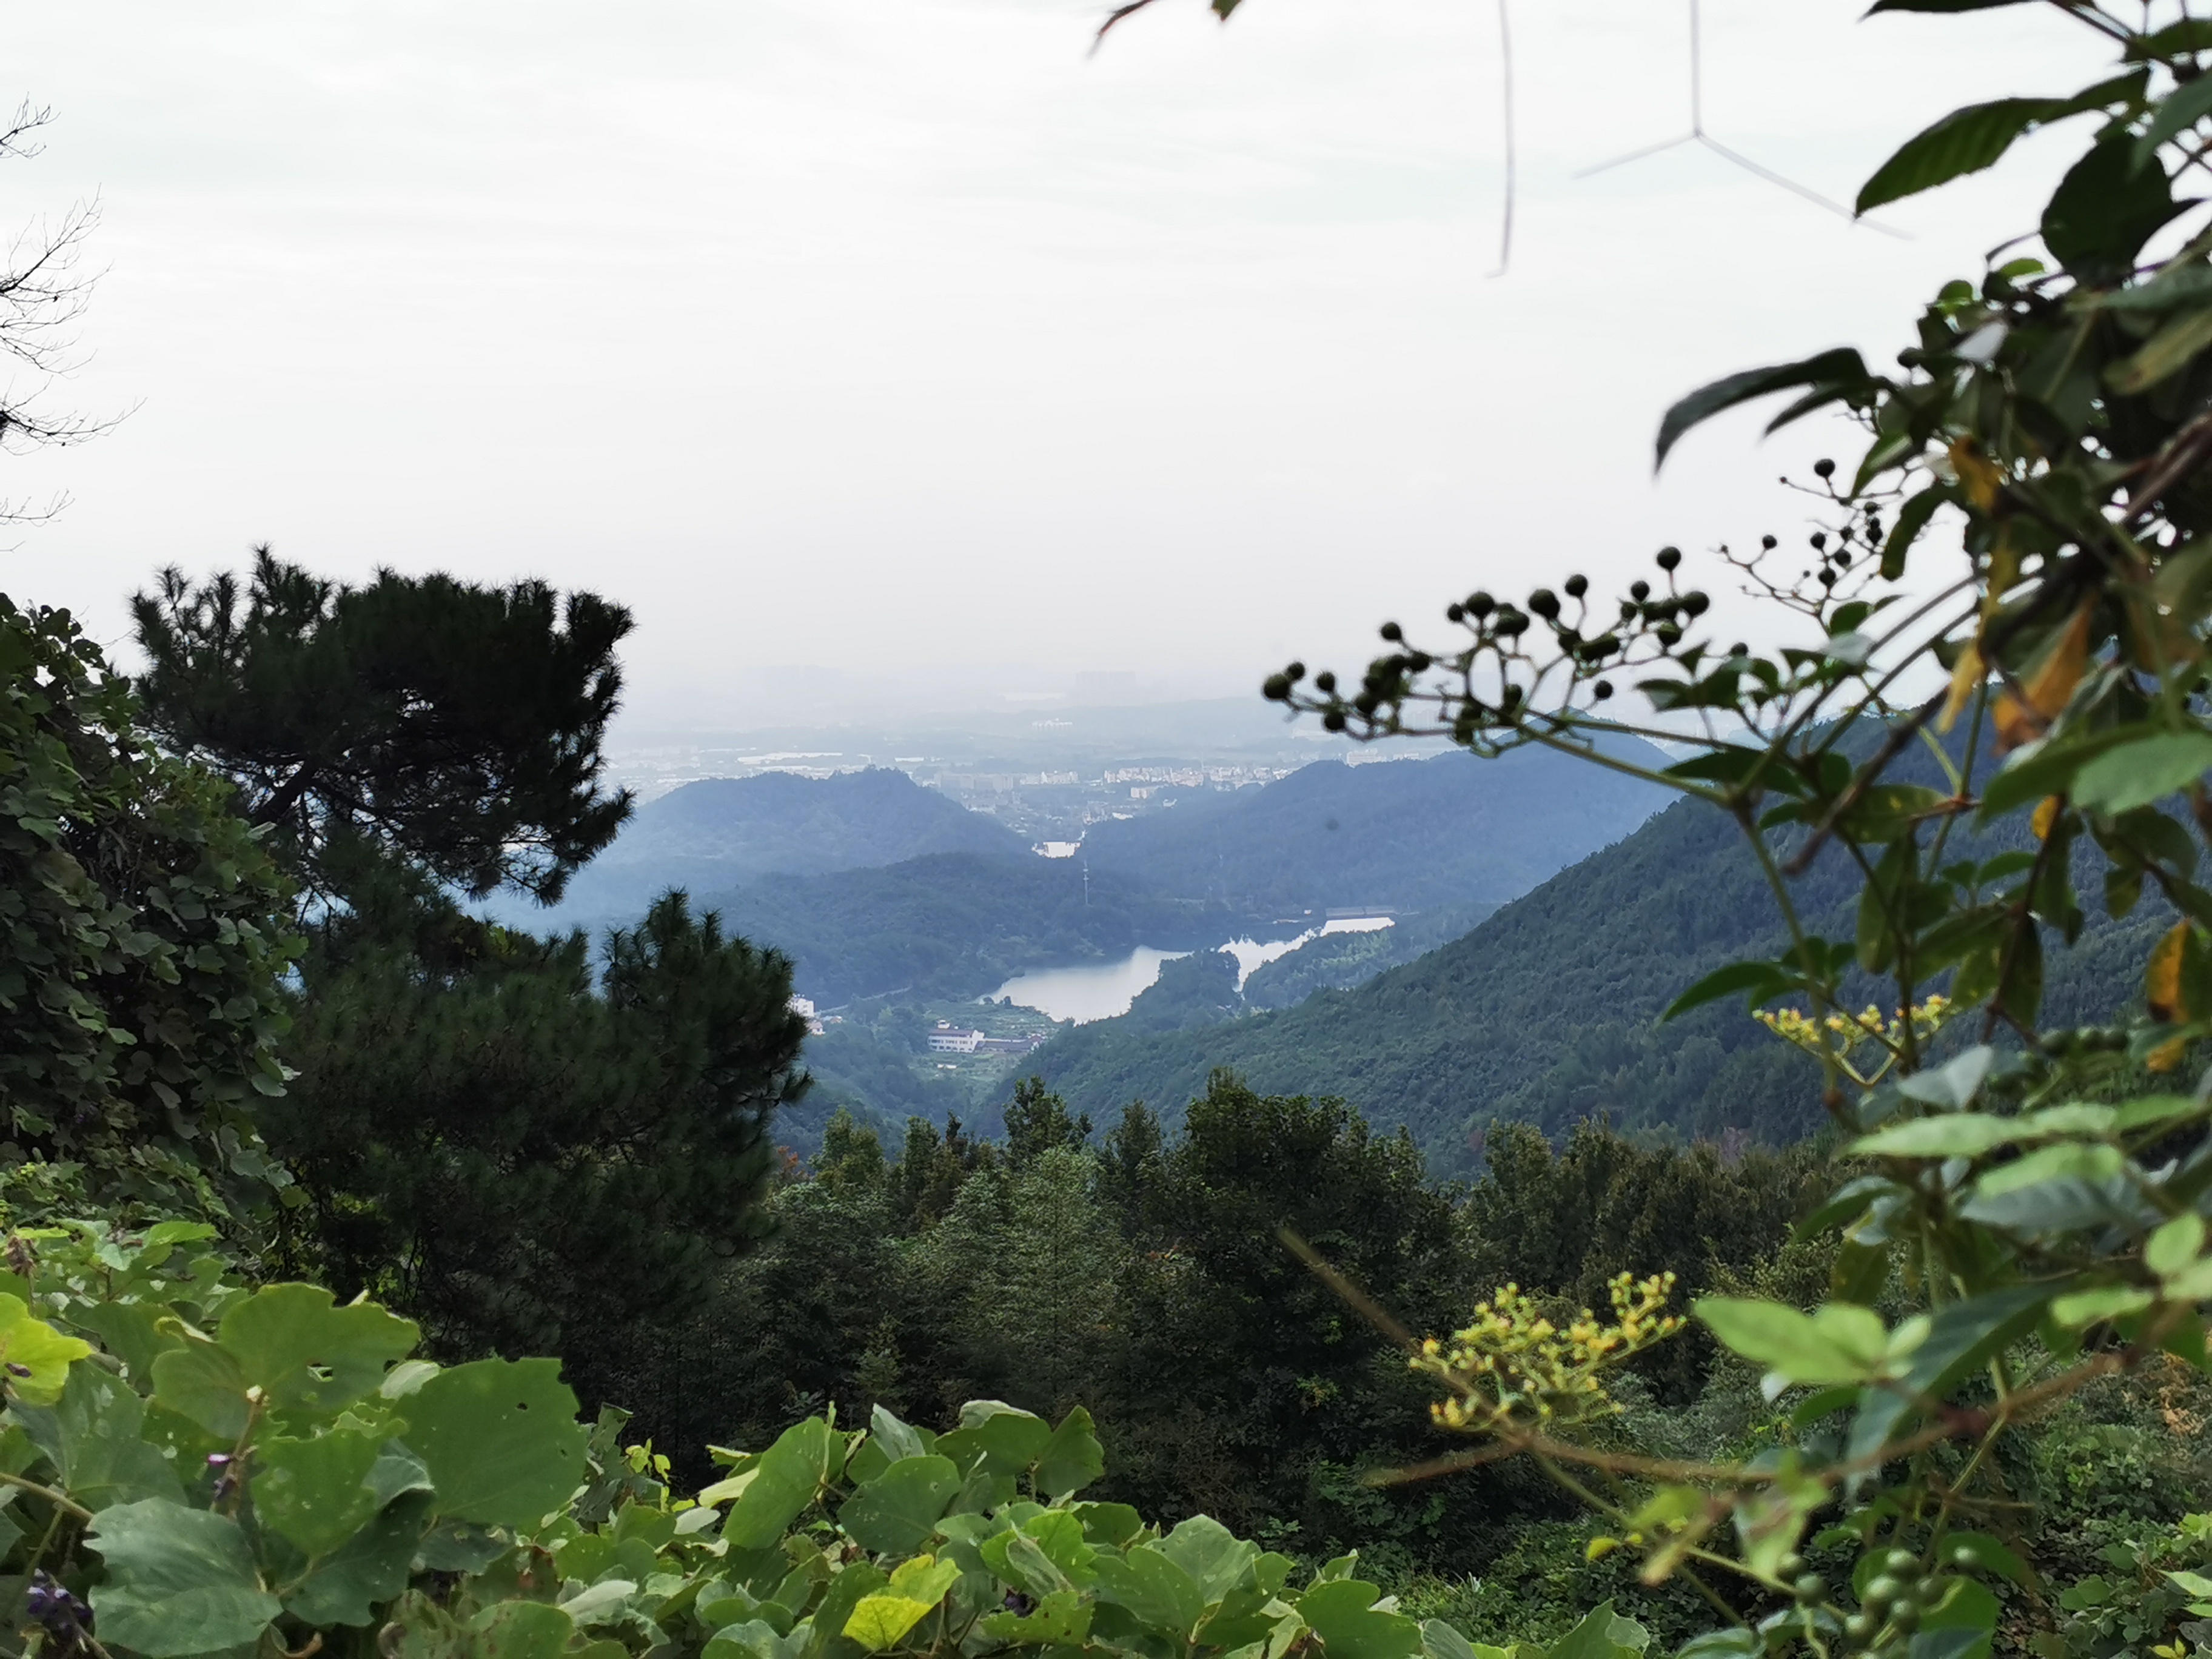 爬仙华山风景名胜区-总体来说还是比较轻松的，可以来山上看看风景，吸吸氧